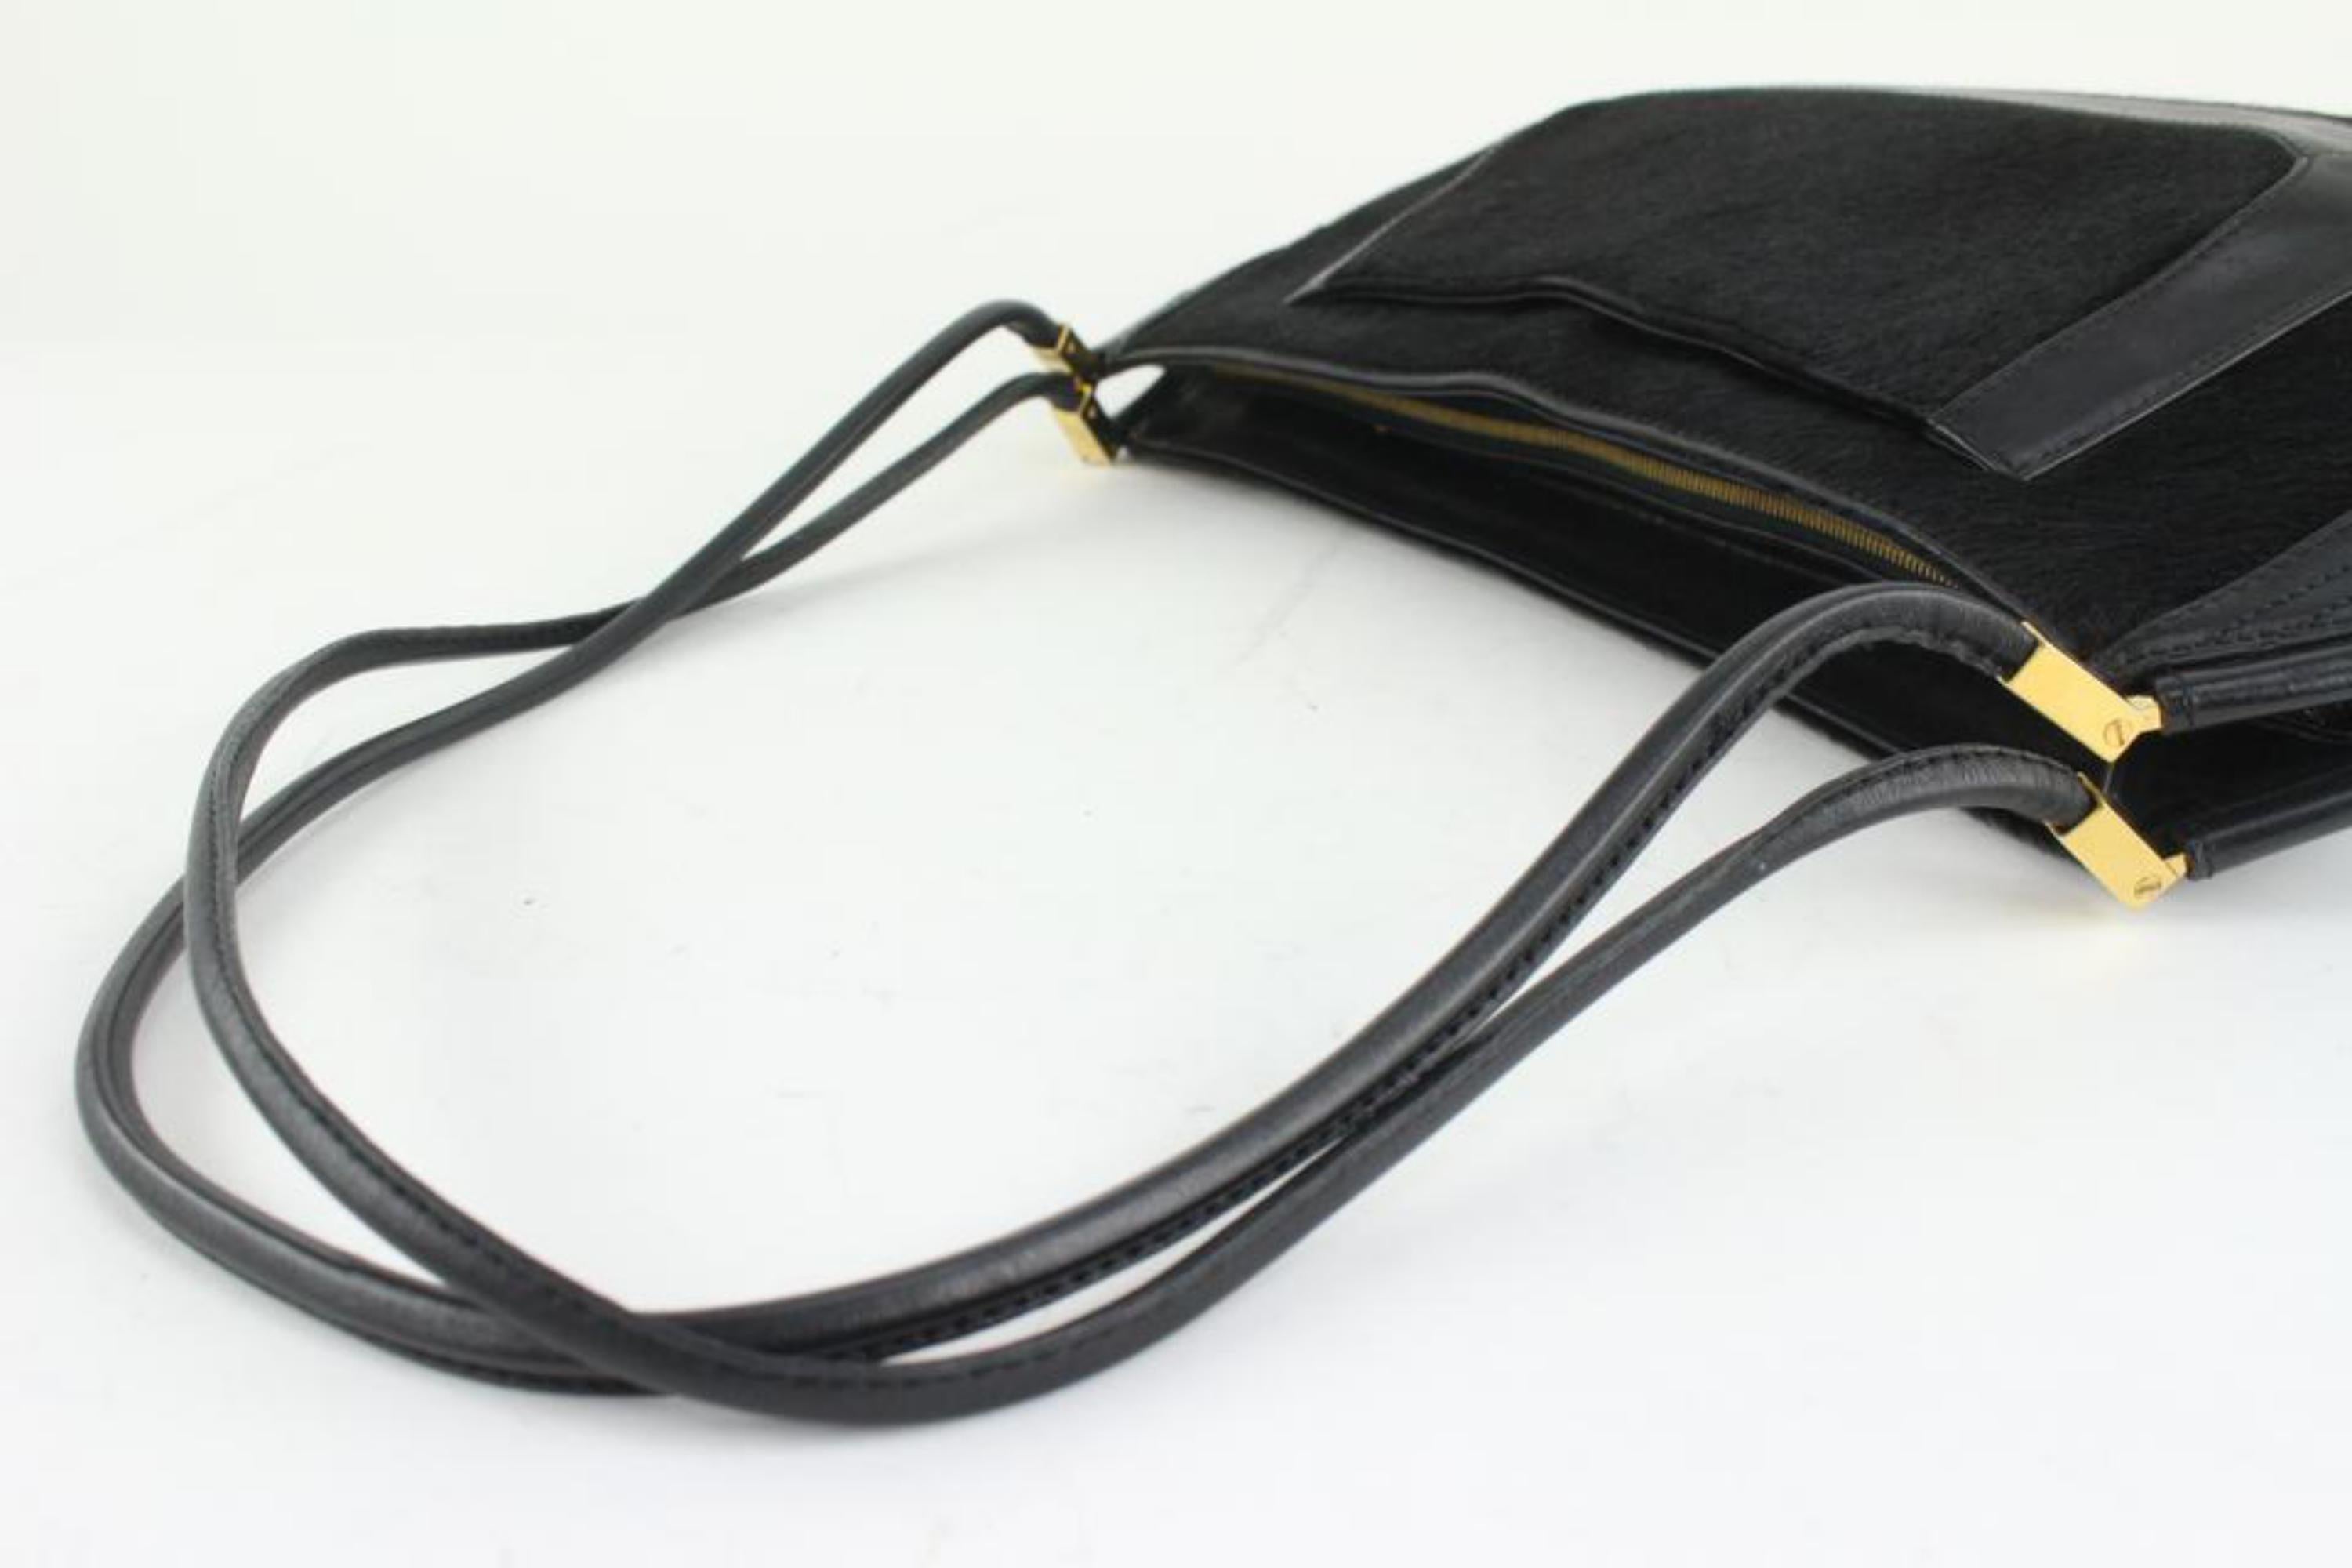 Versace Black x Gold Pony Hair Fur Shoulder bag 1216v27 For Sale 6